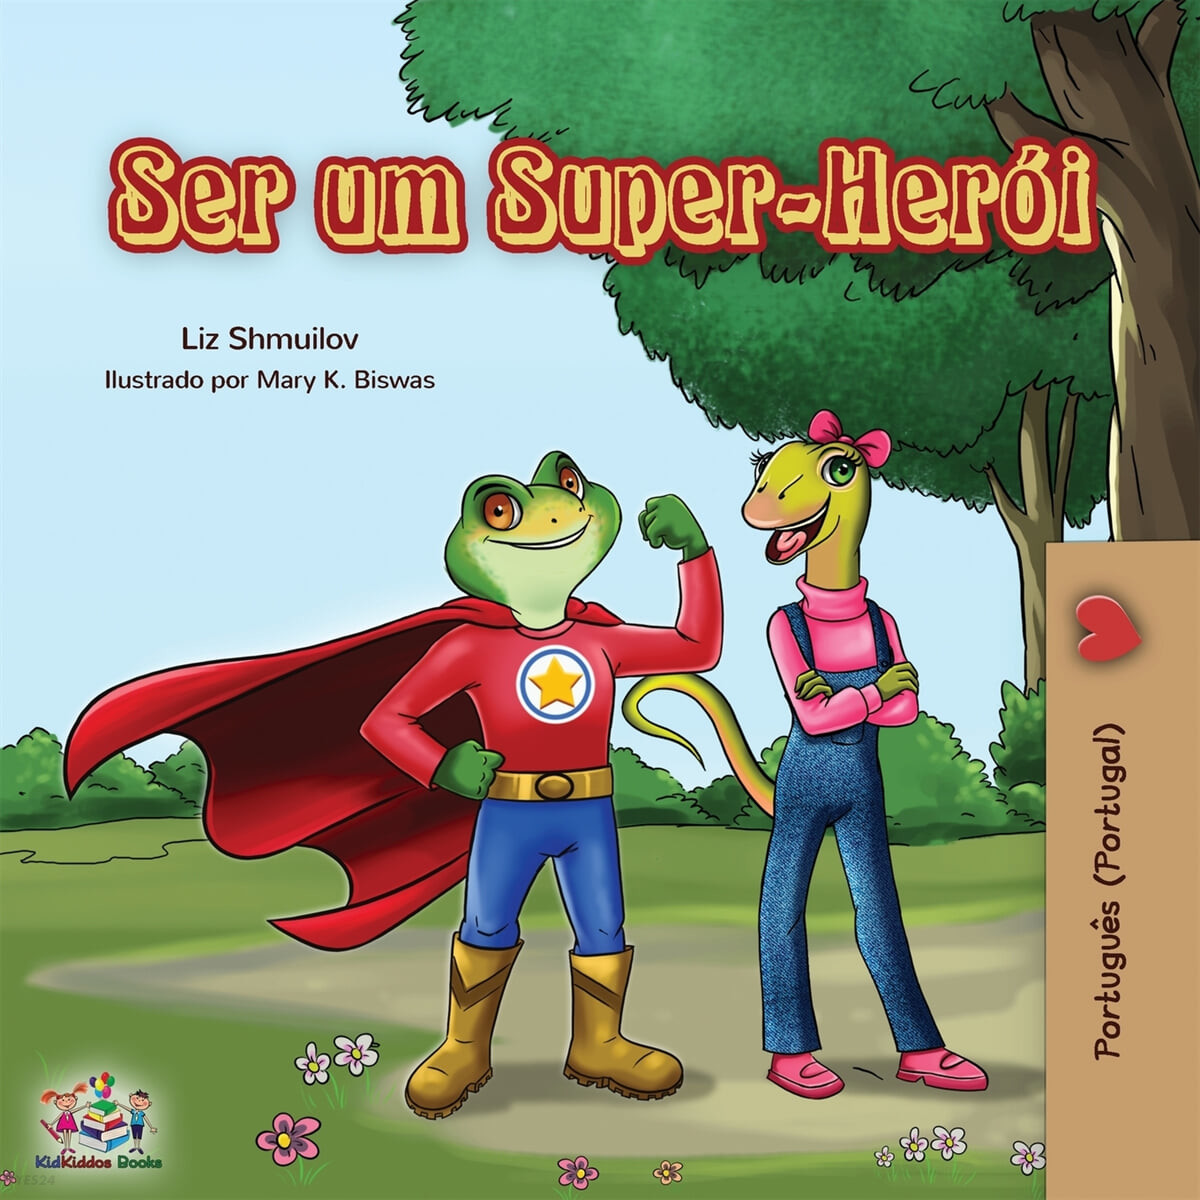 Ser um Super-Her?i: Being a Superhero (Portuguese - Portugal)